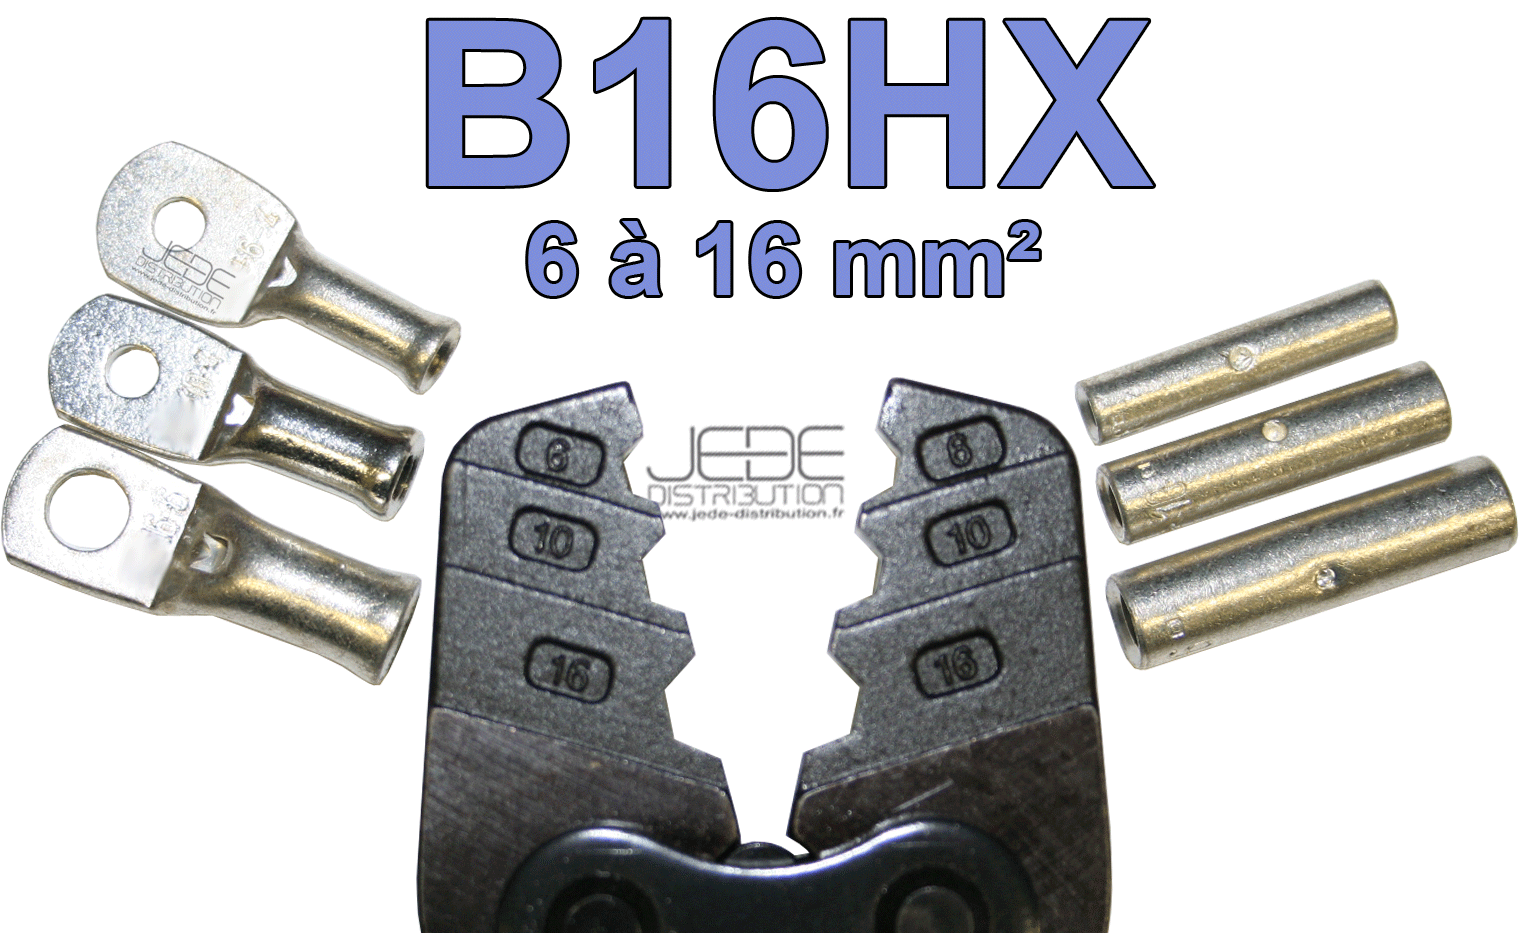 B16HX-pince-a-sertissage-hexagonal-pour-manchon-et-cosse-tubulaire-de-6-a-16-mm_178_-02-JEDE-distribution.png